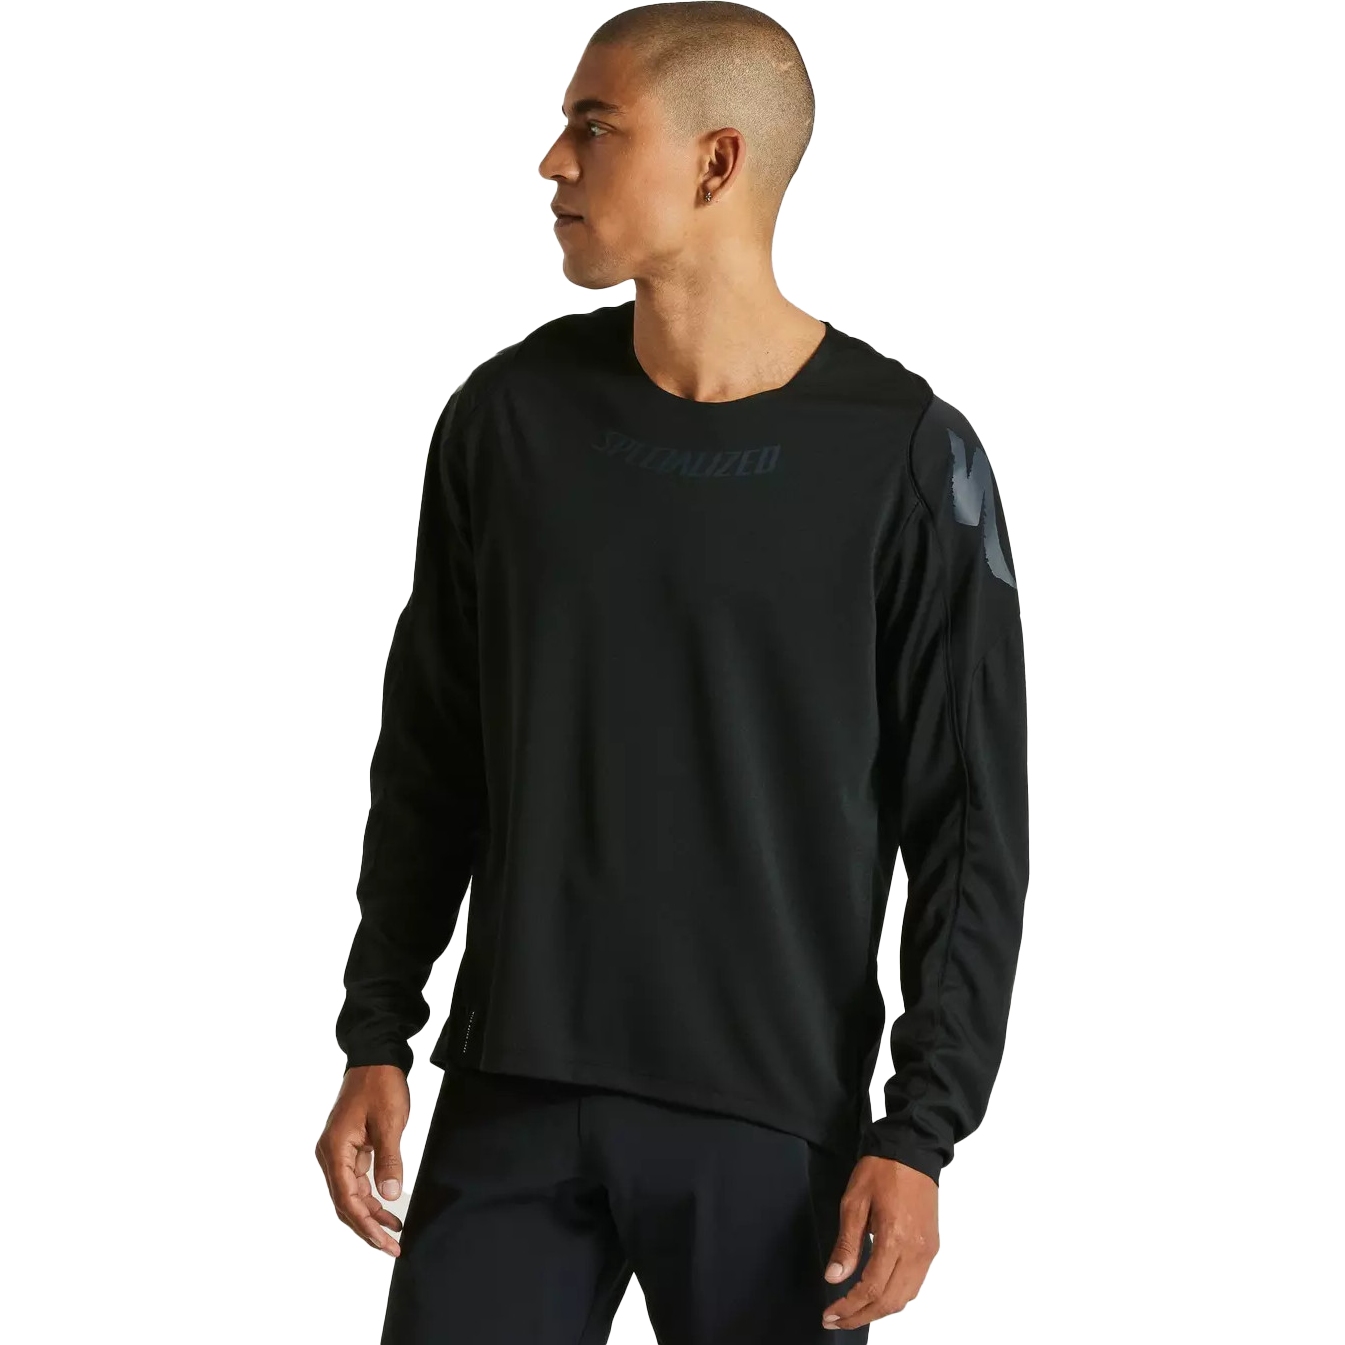 Productfoto van Specialized Gravity Fietsshirt met Lange Mouwen Unisex - zwart